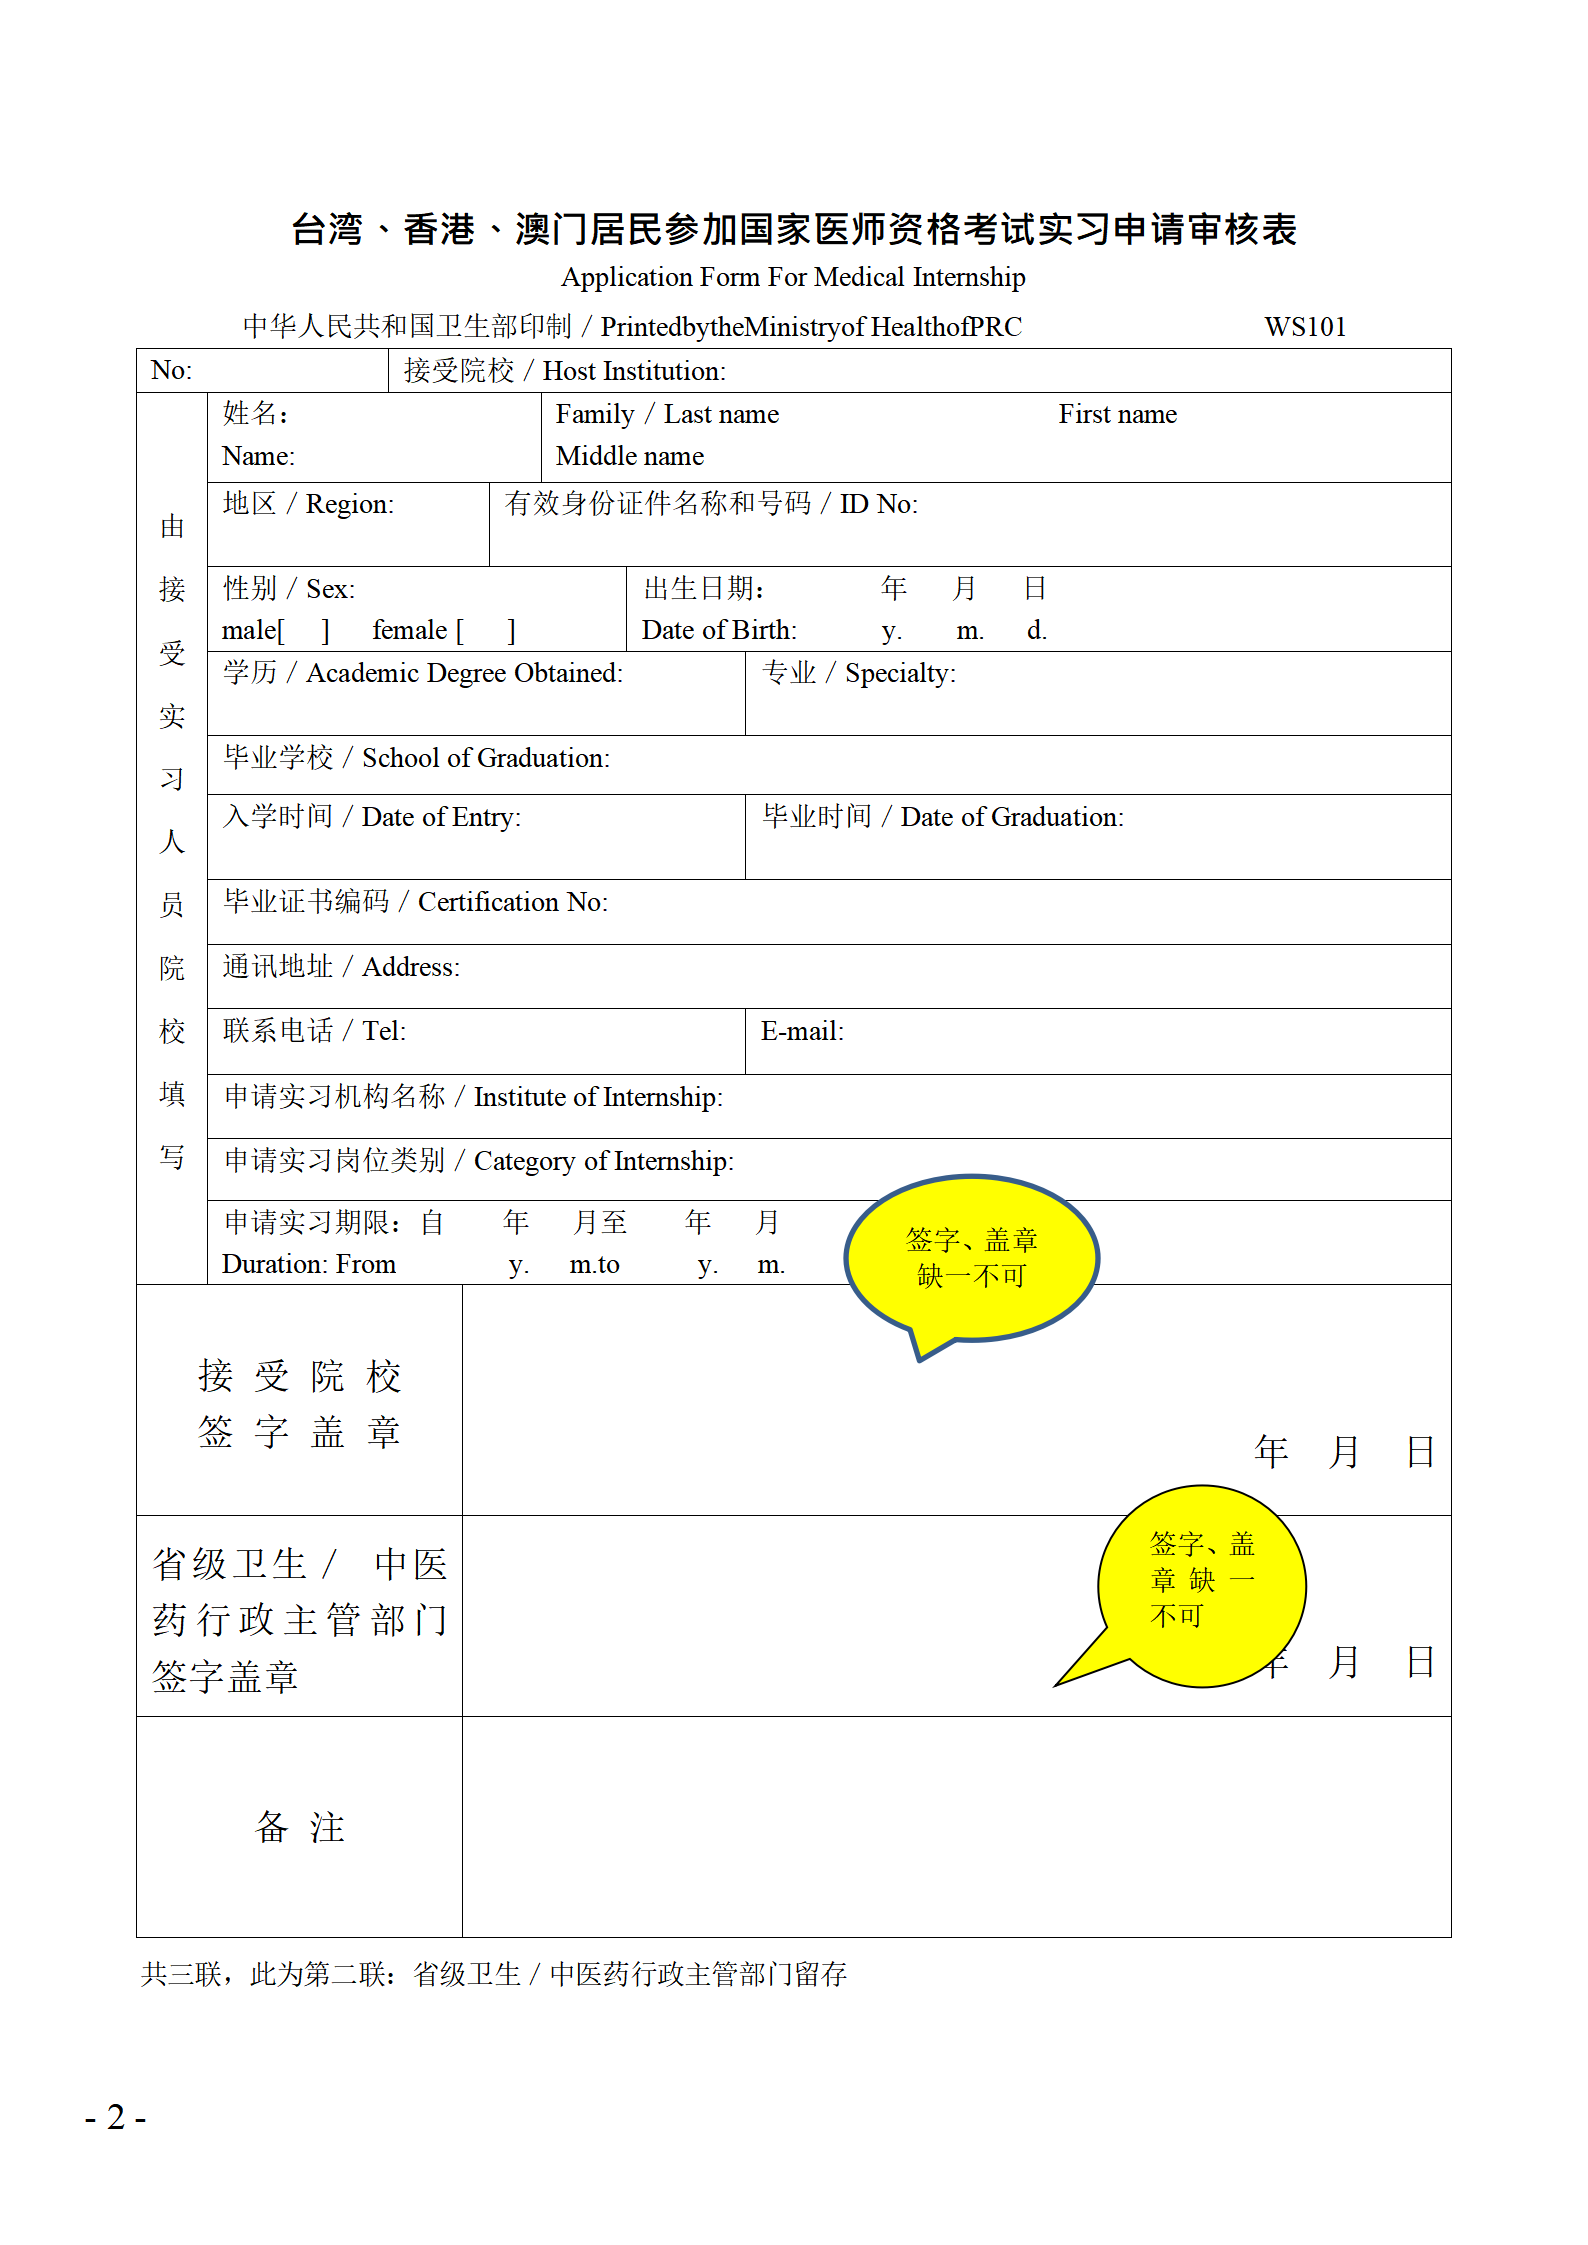 台湾、香港、澳门居民参加国家医师资格考试实习申请审核表填写说明_02